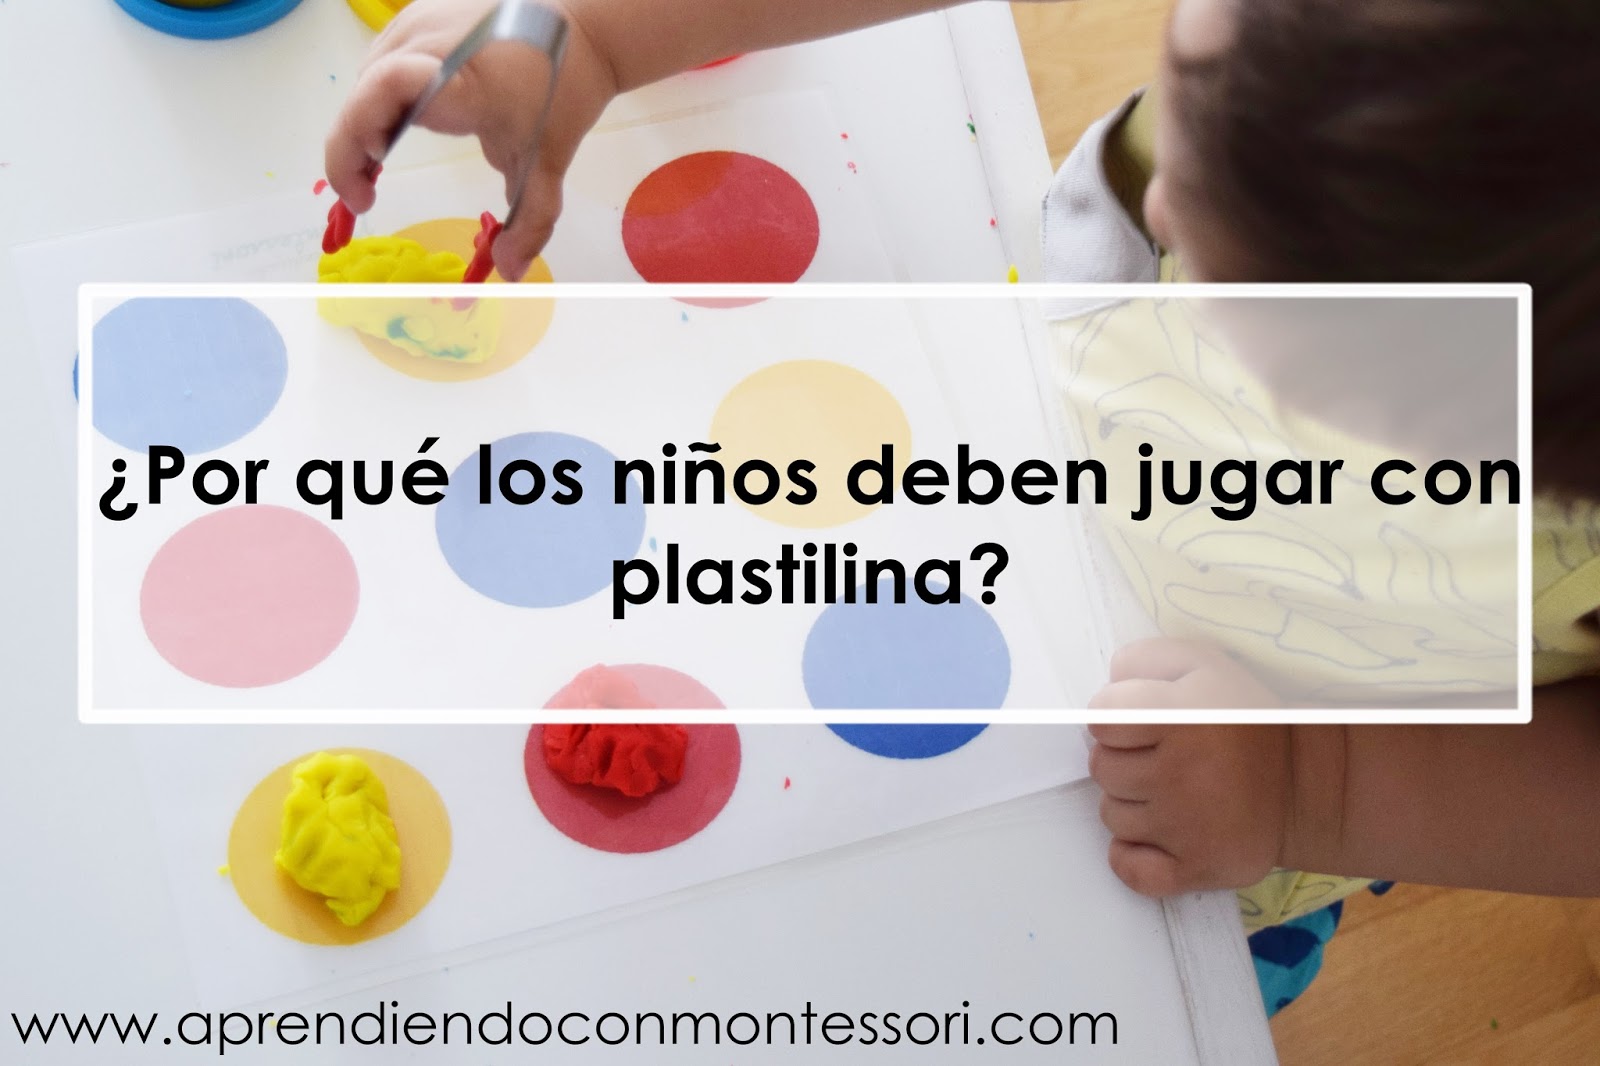 Qué hacer si tu hijo come plastilina - Material Escolar Blog